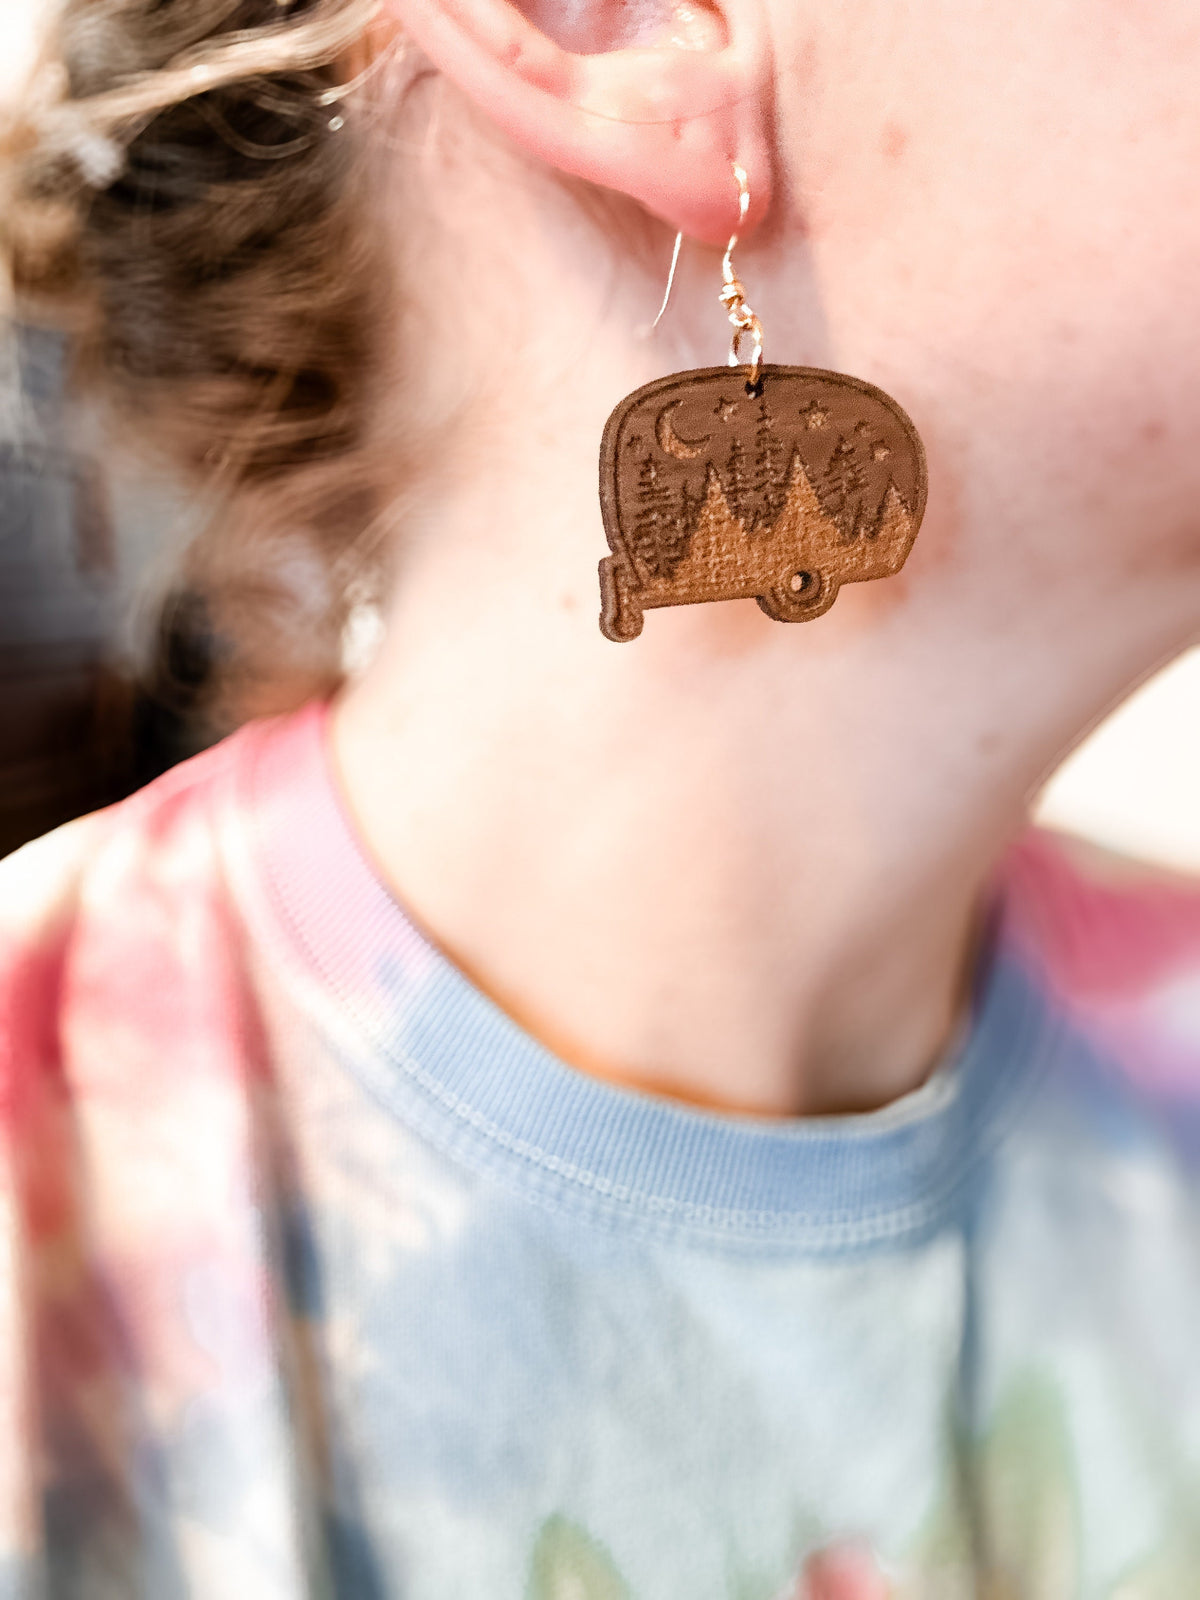 HAPPY CAMPER earrings - walnut wood earrings - natural earrings - wanderlust earrings - gold earrings- camper van earring - camping jewelry